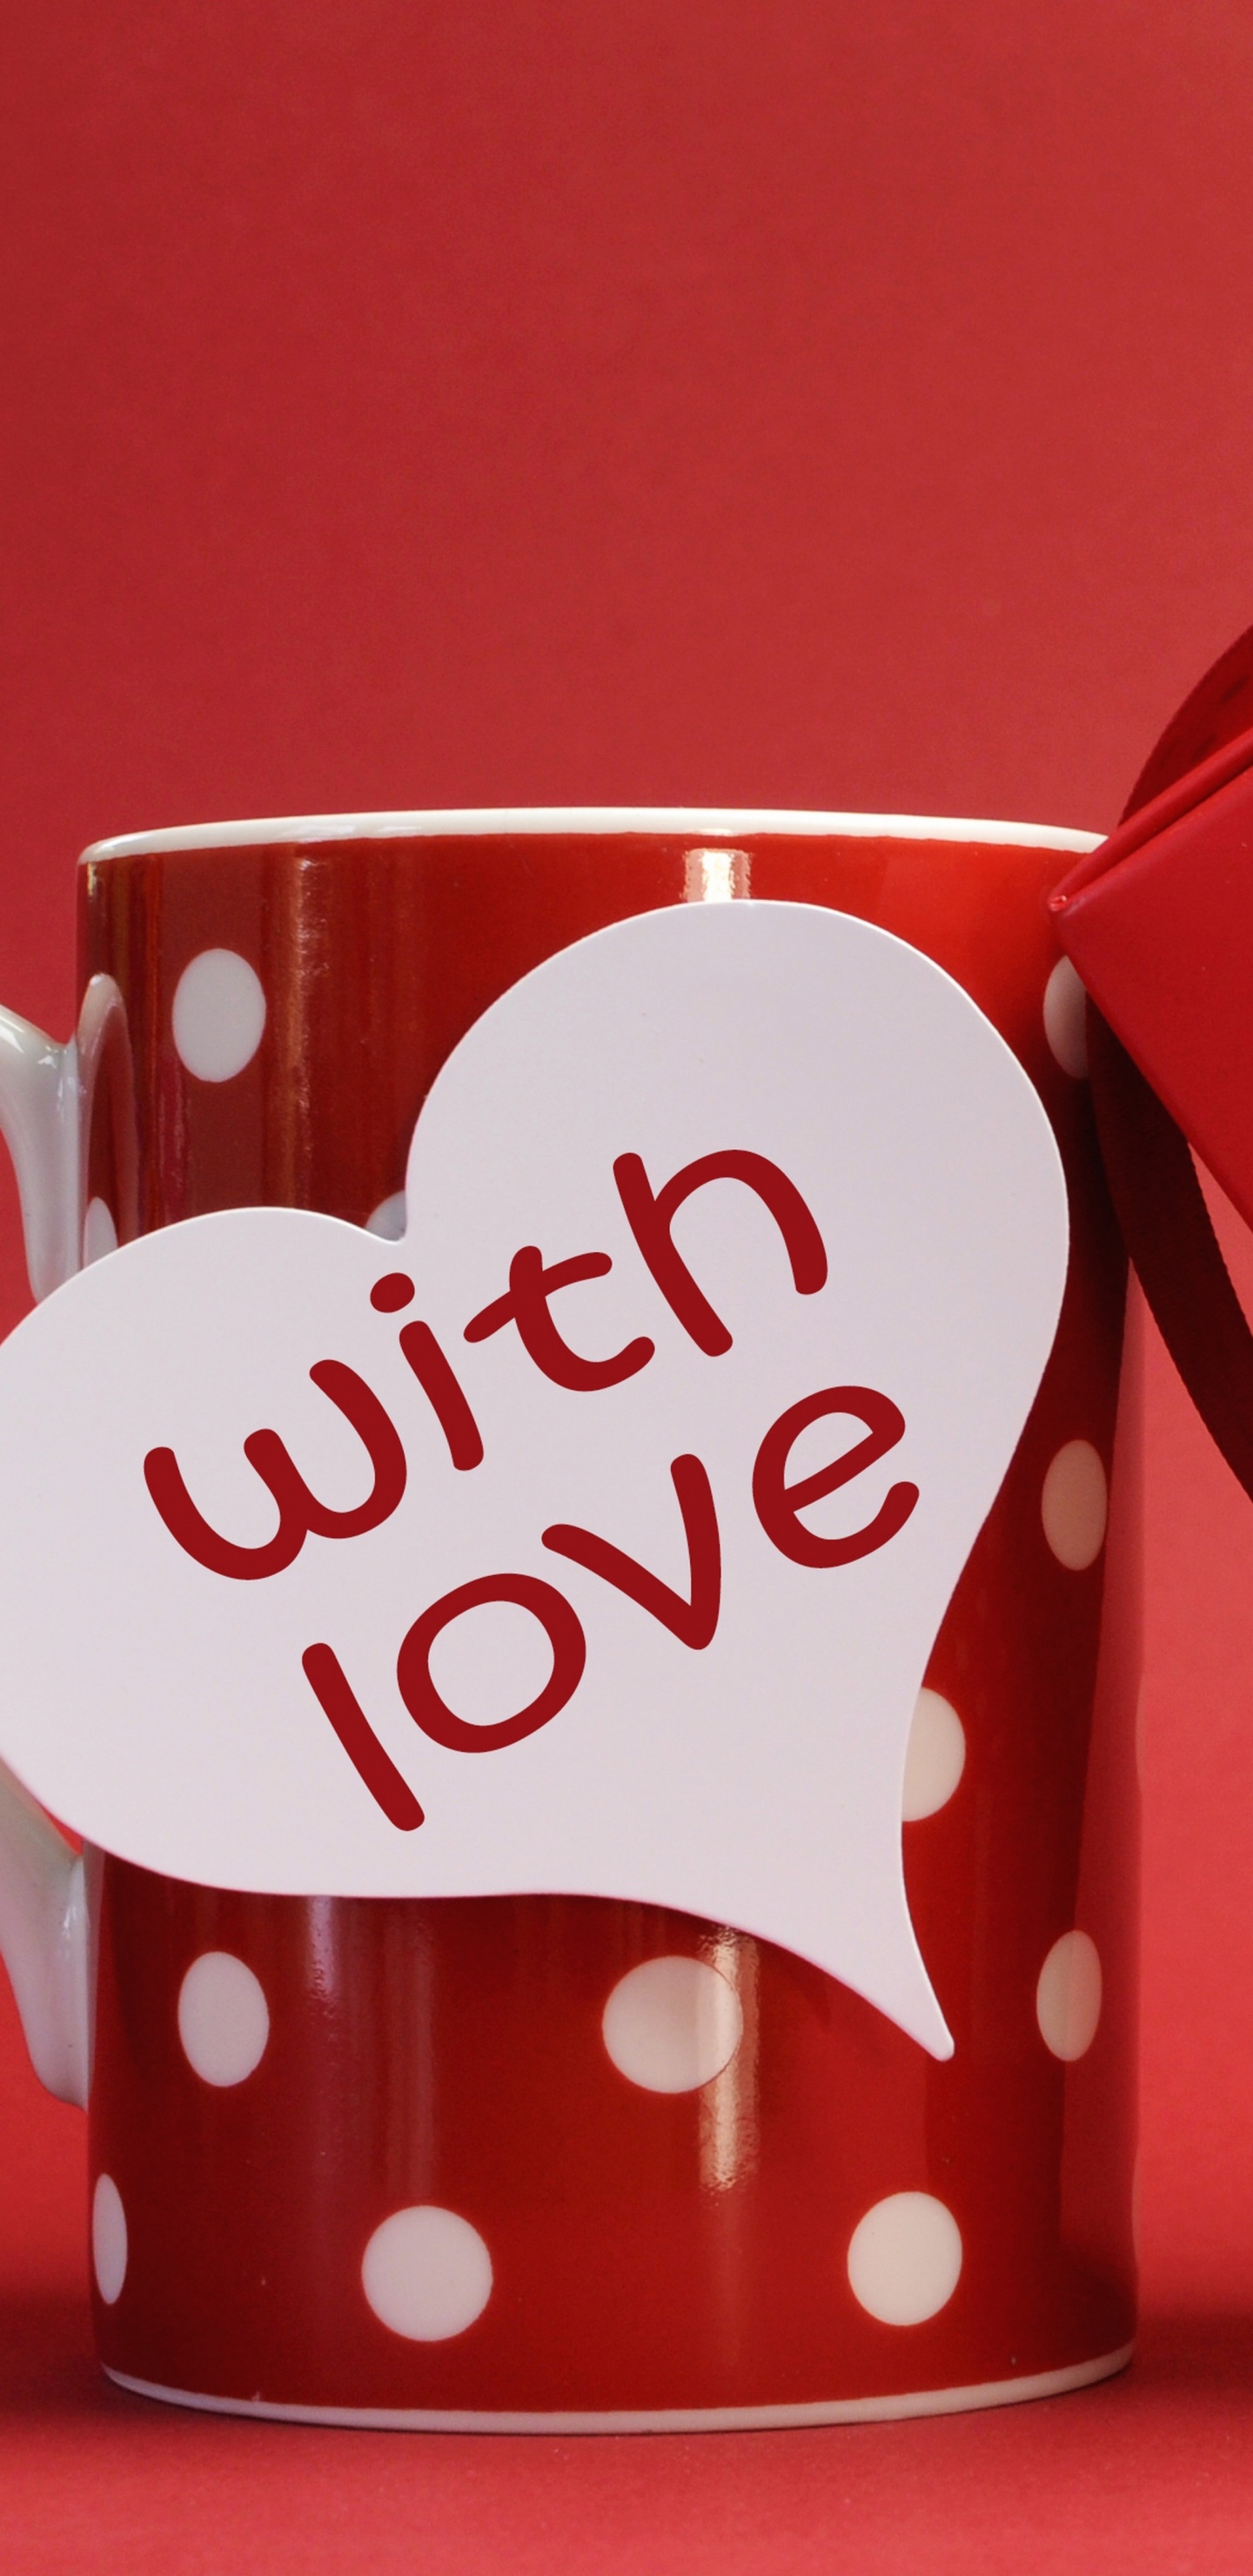 浪漫, 心脏, 爱情, 咖啡杯, 假日 壁纸 1440x2960 允许